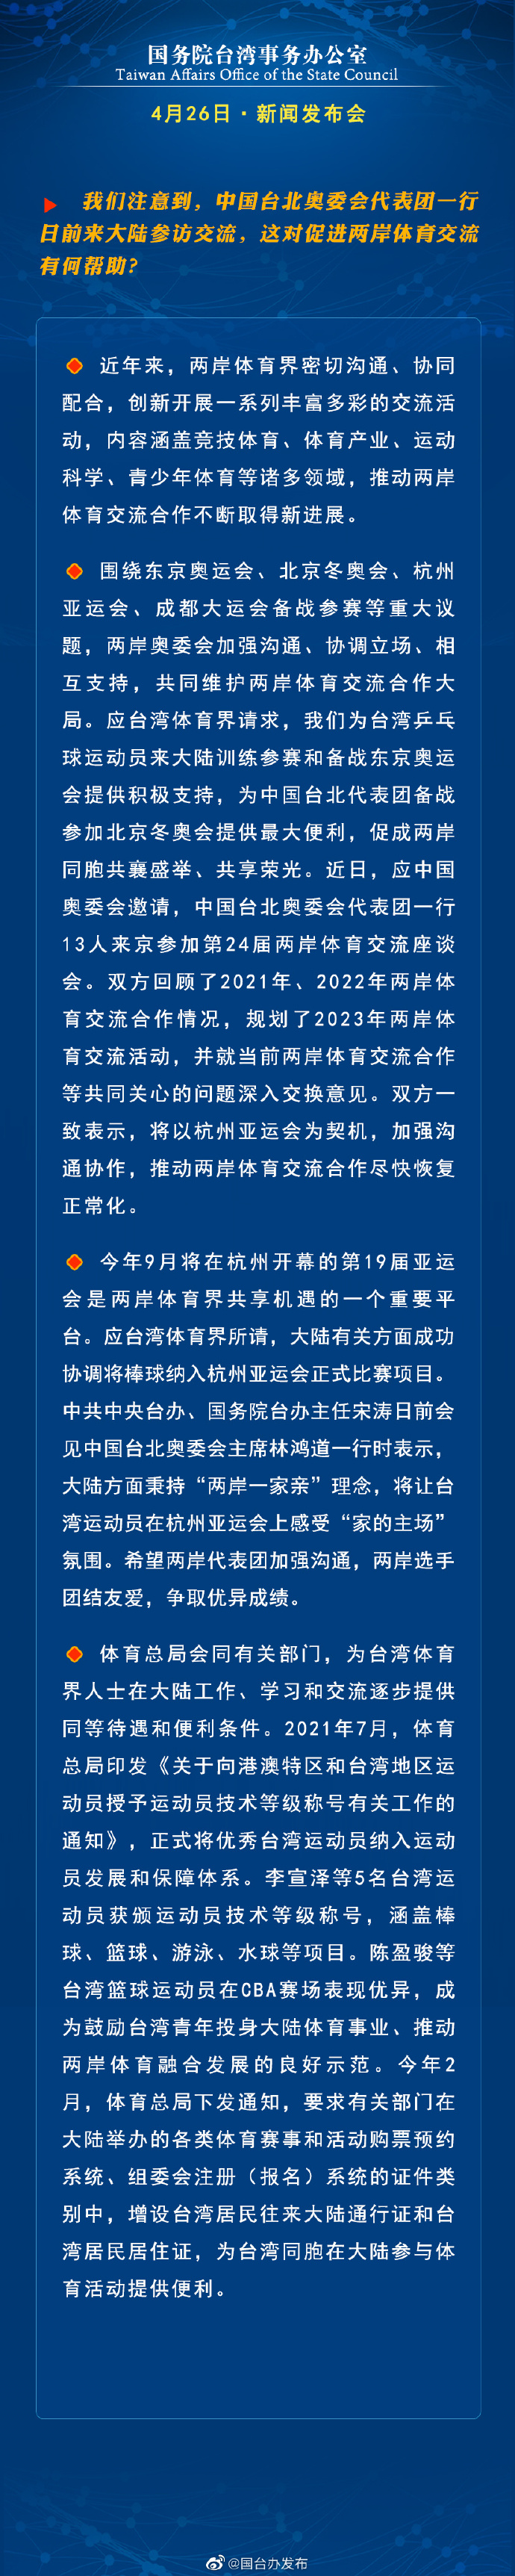 国务院台湾事务办公室4月26日·新闻发布会